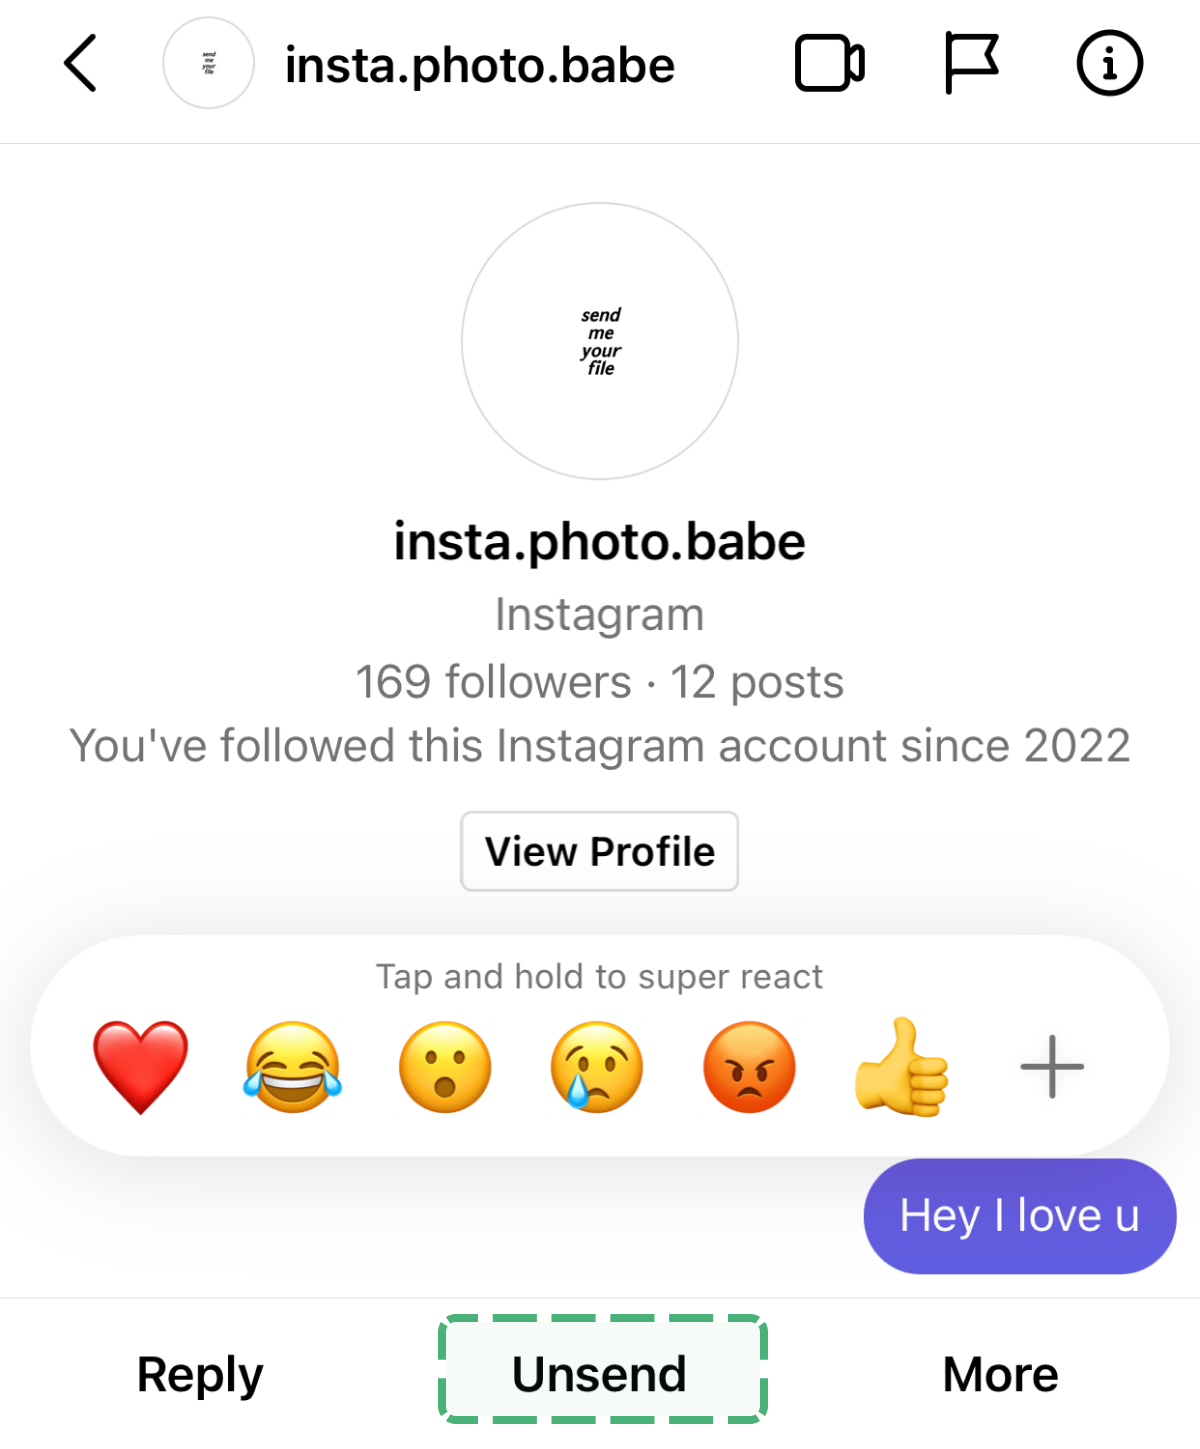 restore messages in the Instagram app